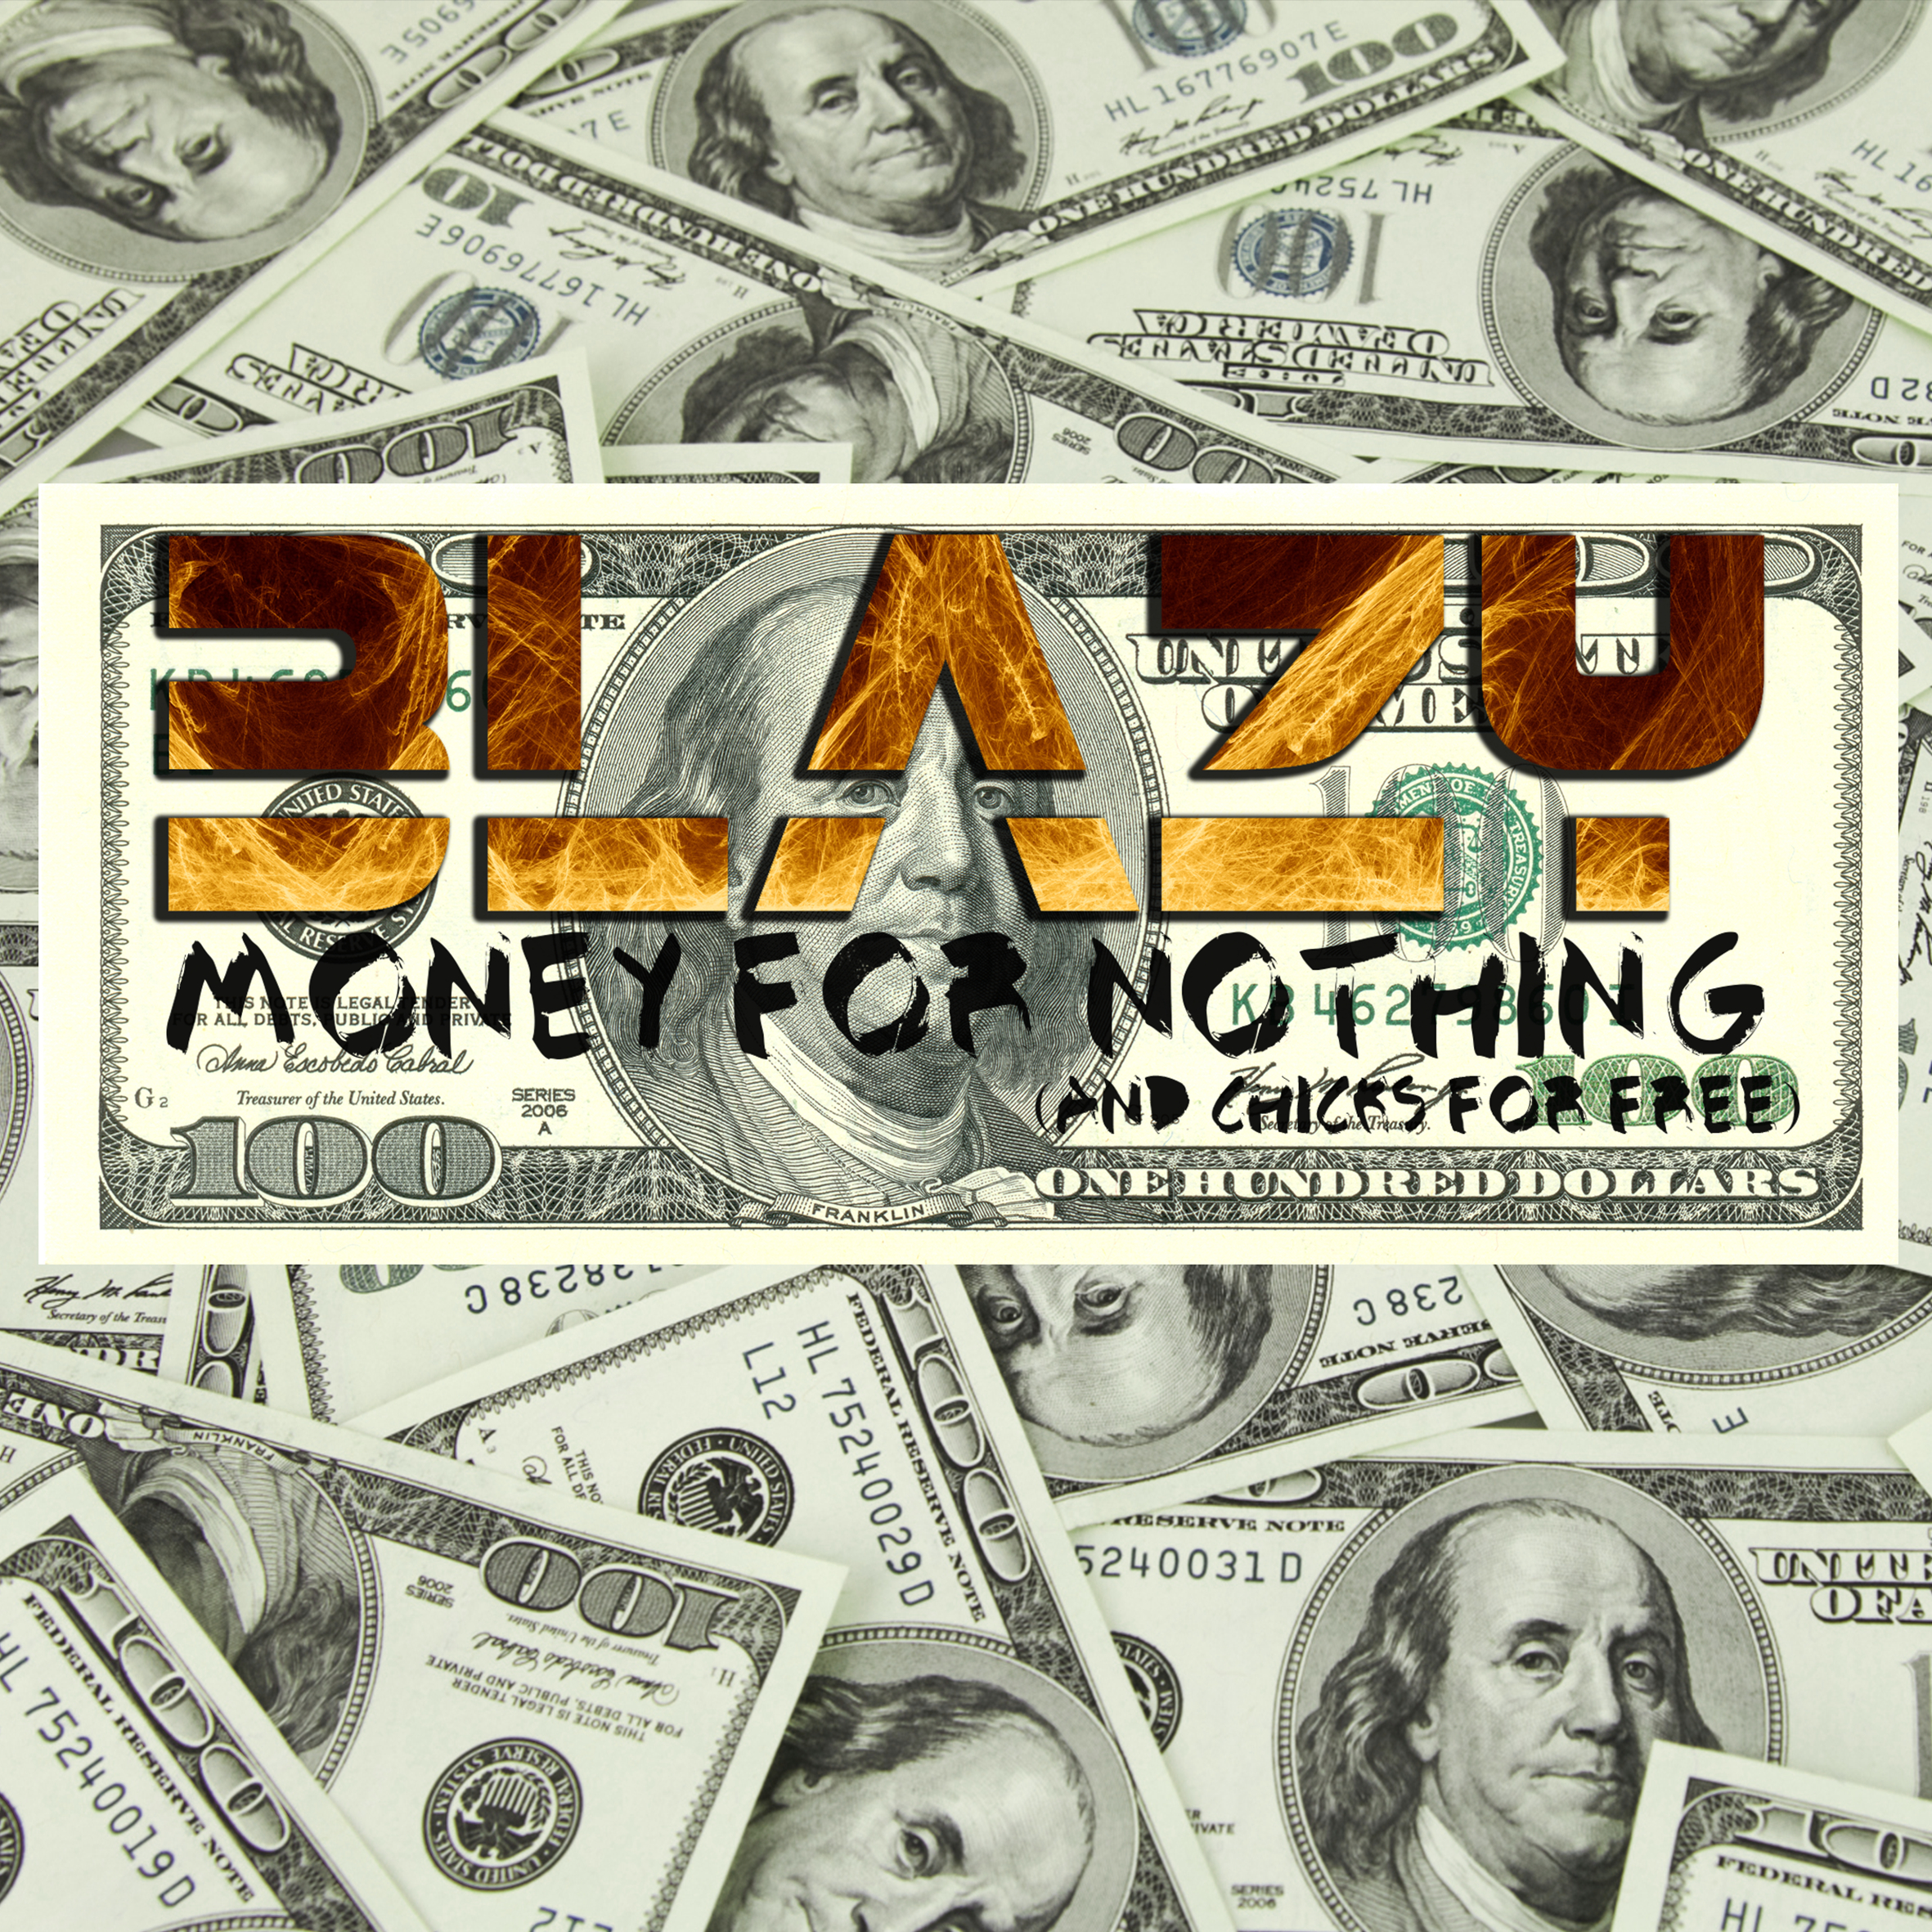 Stiahnuť ▼ Blazy - Money For Nothing